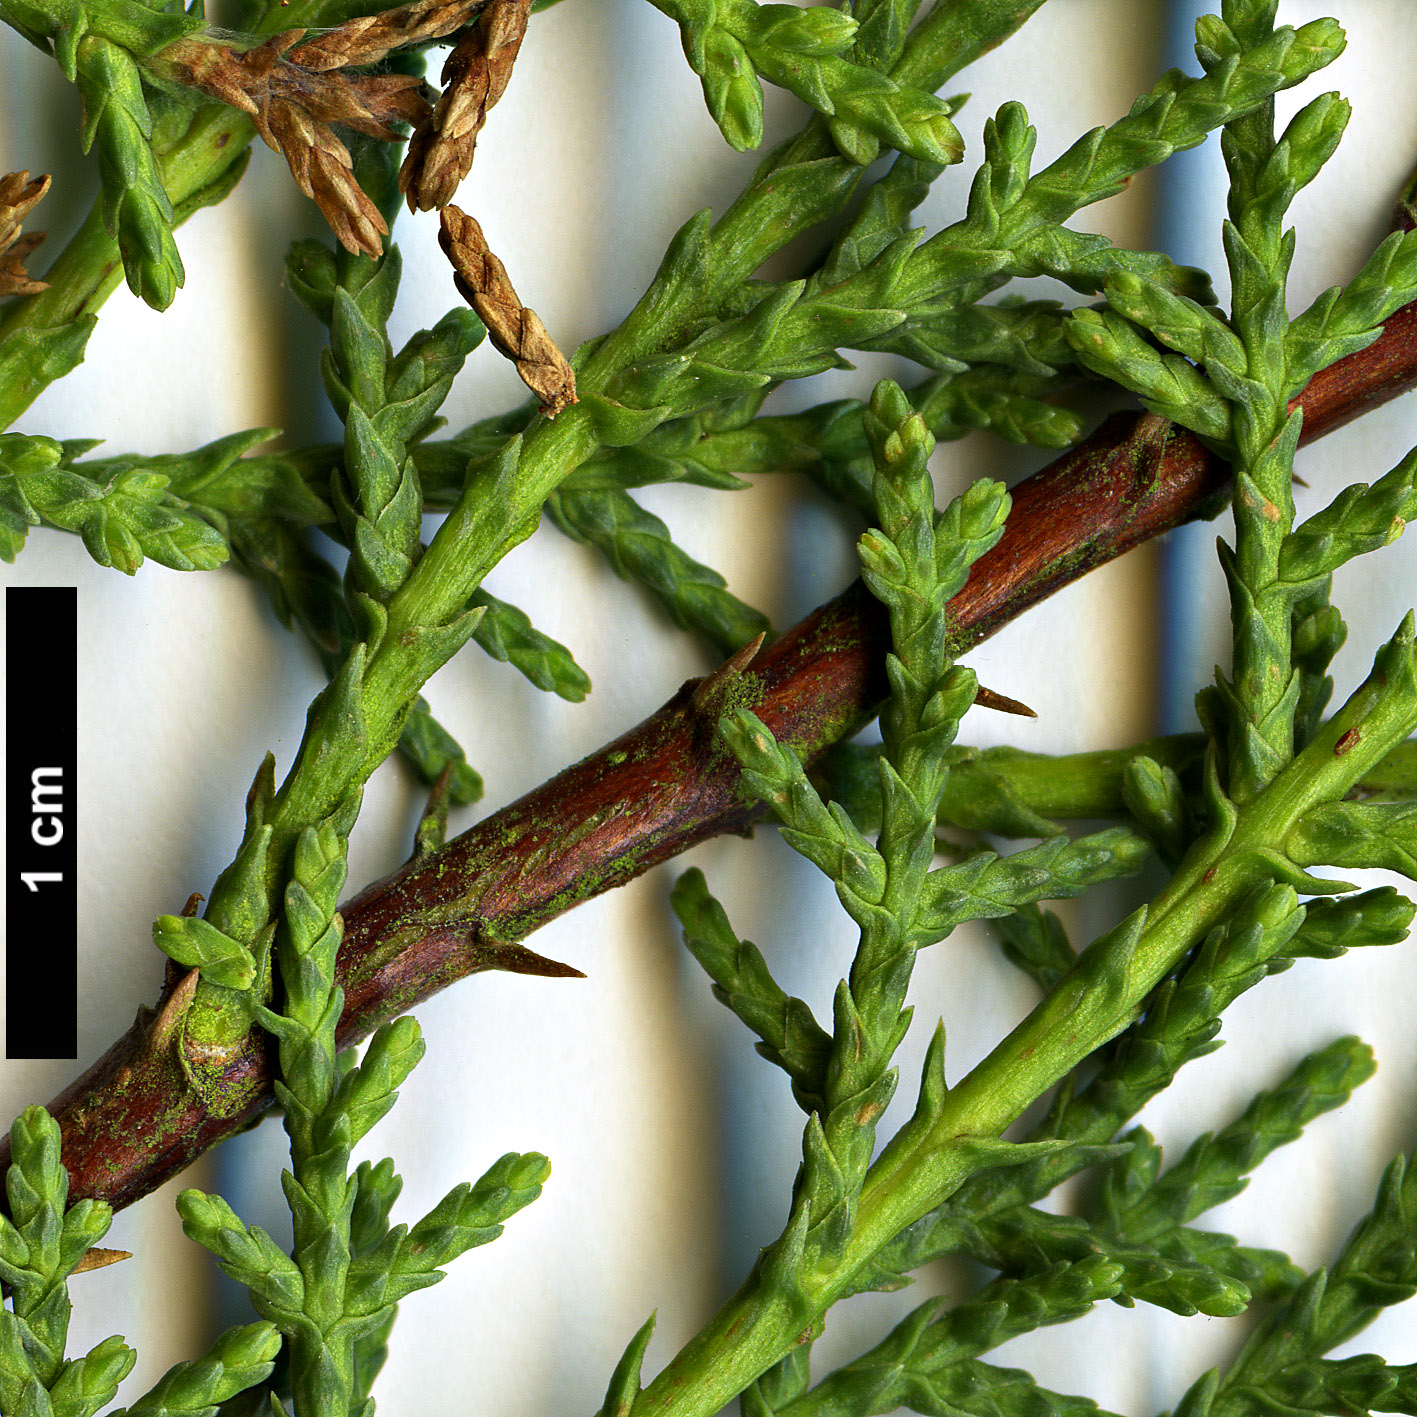 High resolution image: Family: Cupressaceae - Genus: Cupressus - Taxon: sargentii